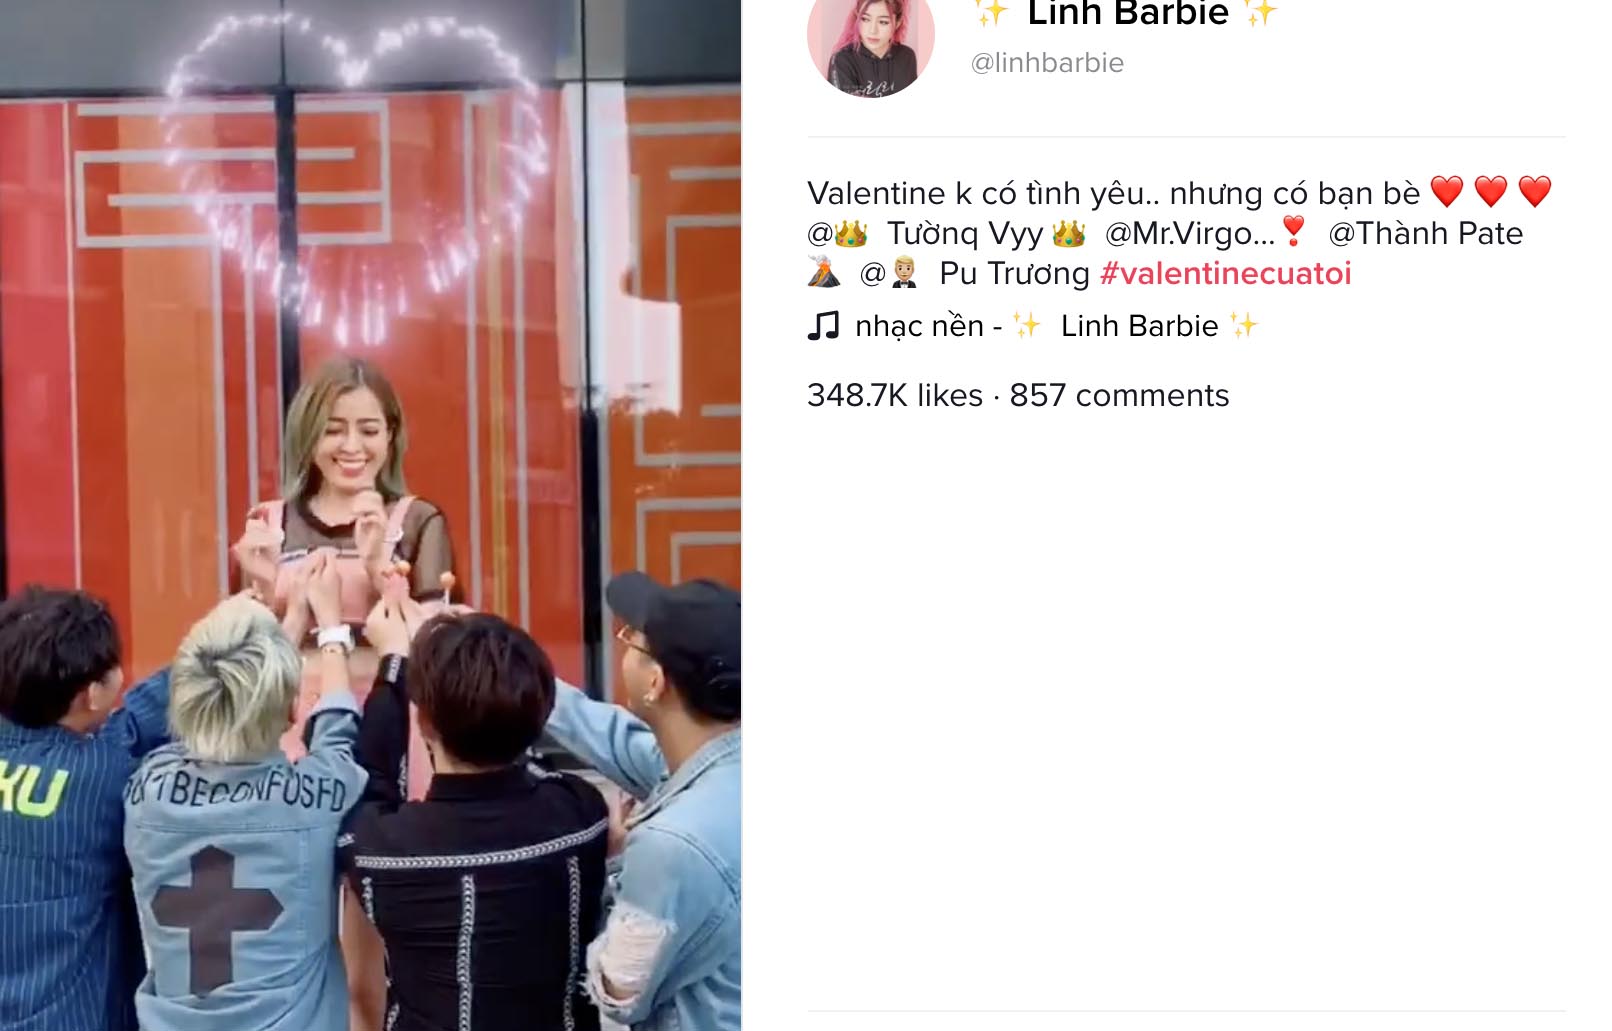 Cùng TikTok đón Valentine 2020 ngập tràn tình yêu với chiến dịch #Valentinecuatoi